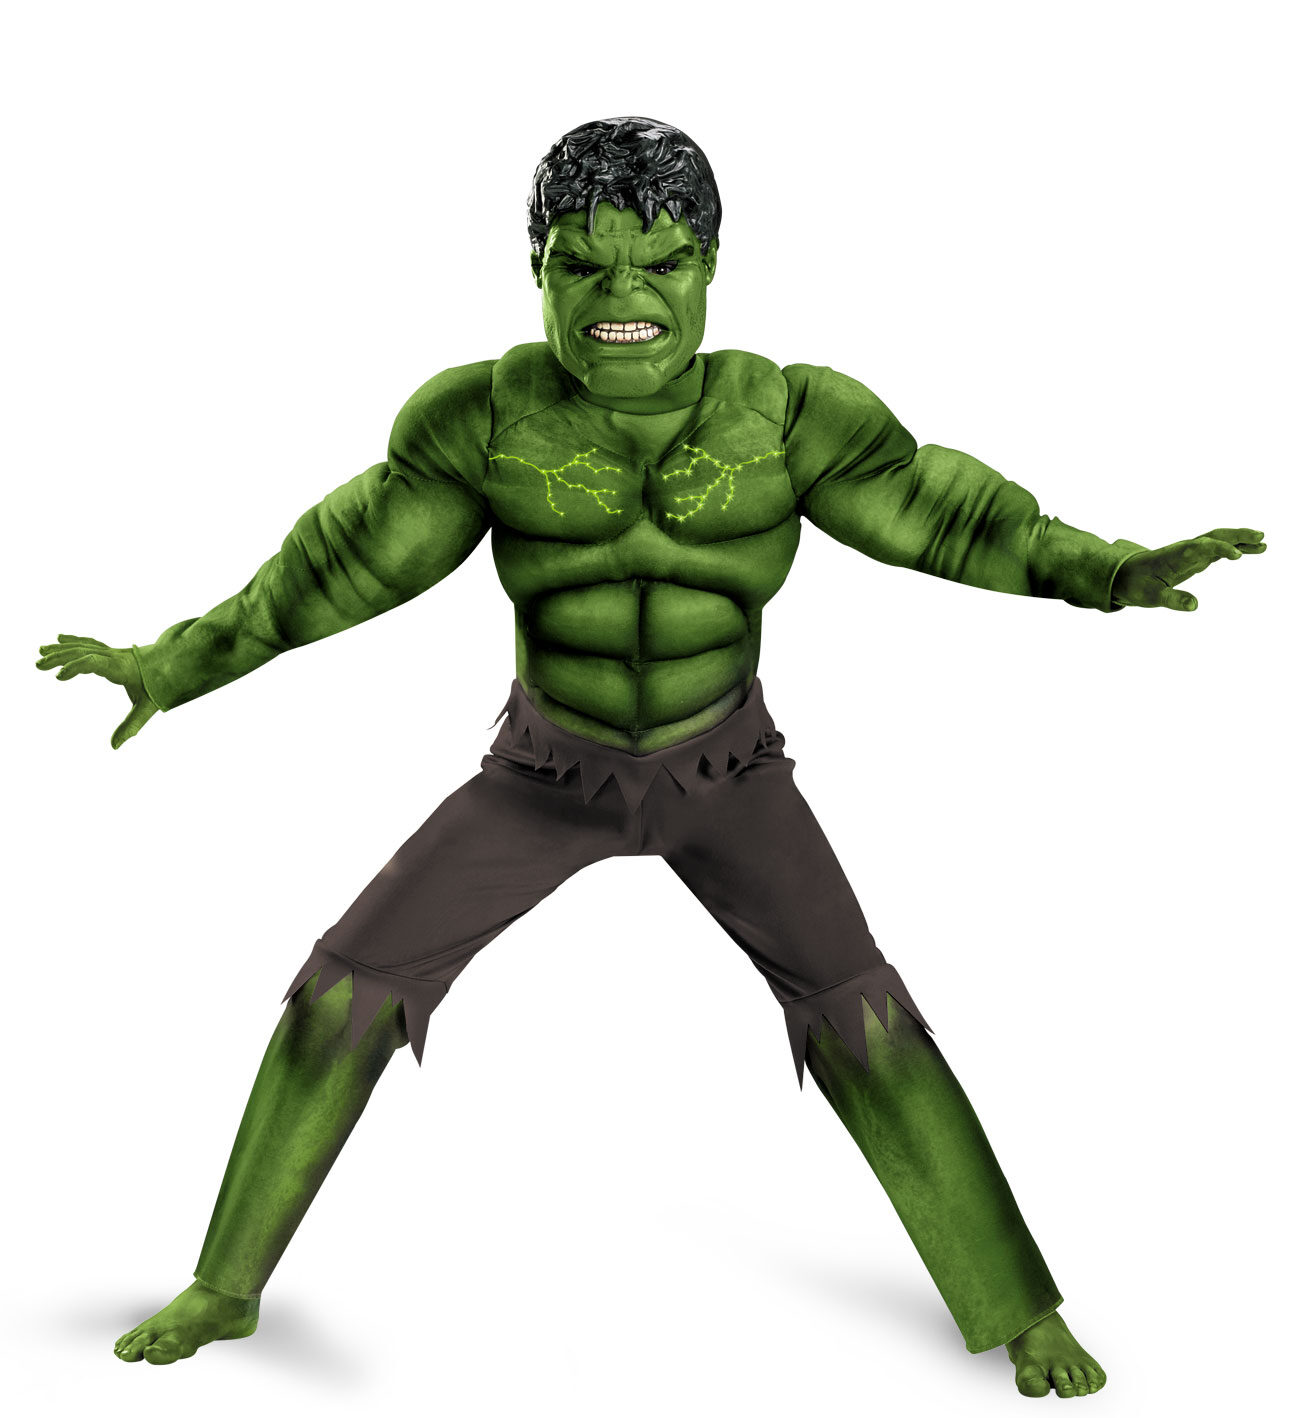 Déguisement Muscle - Hulk - Avengers